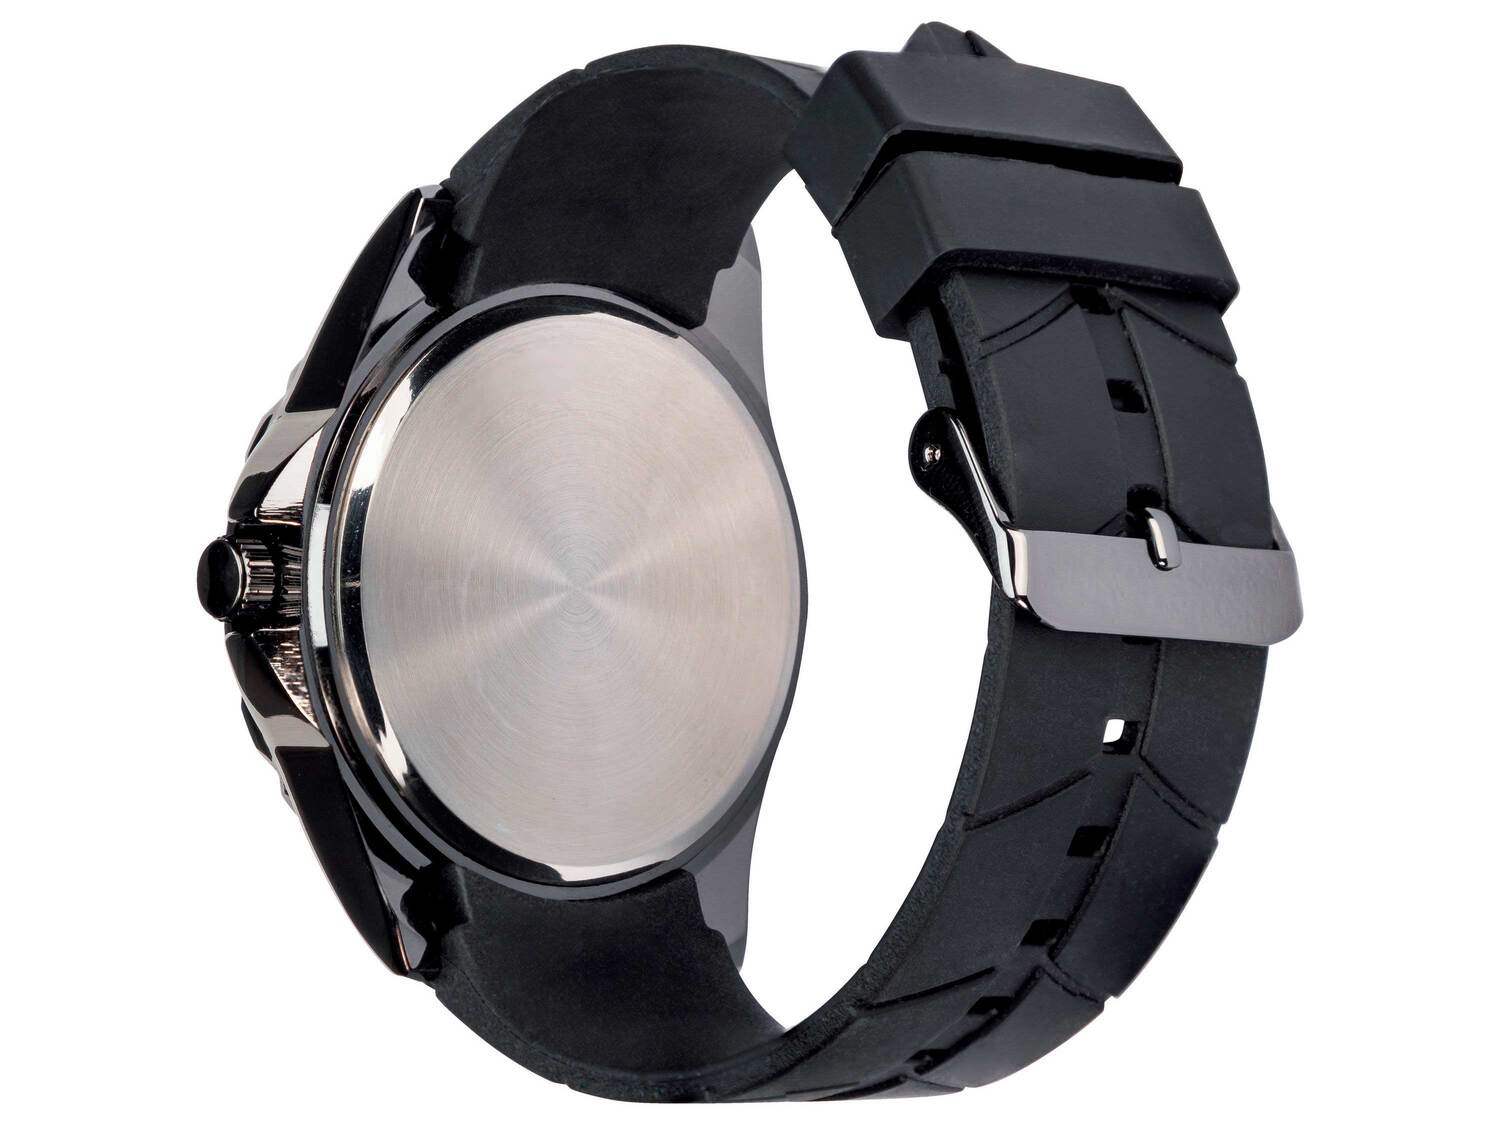 Zegarek sportowy Auriol, cena 19,99 PLN 
5 wzorów 
- mechanizm kwarcowy
- silikonowy ...